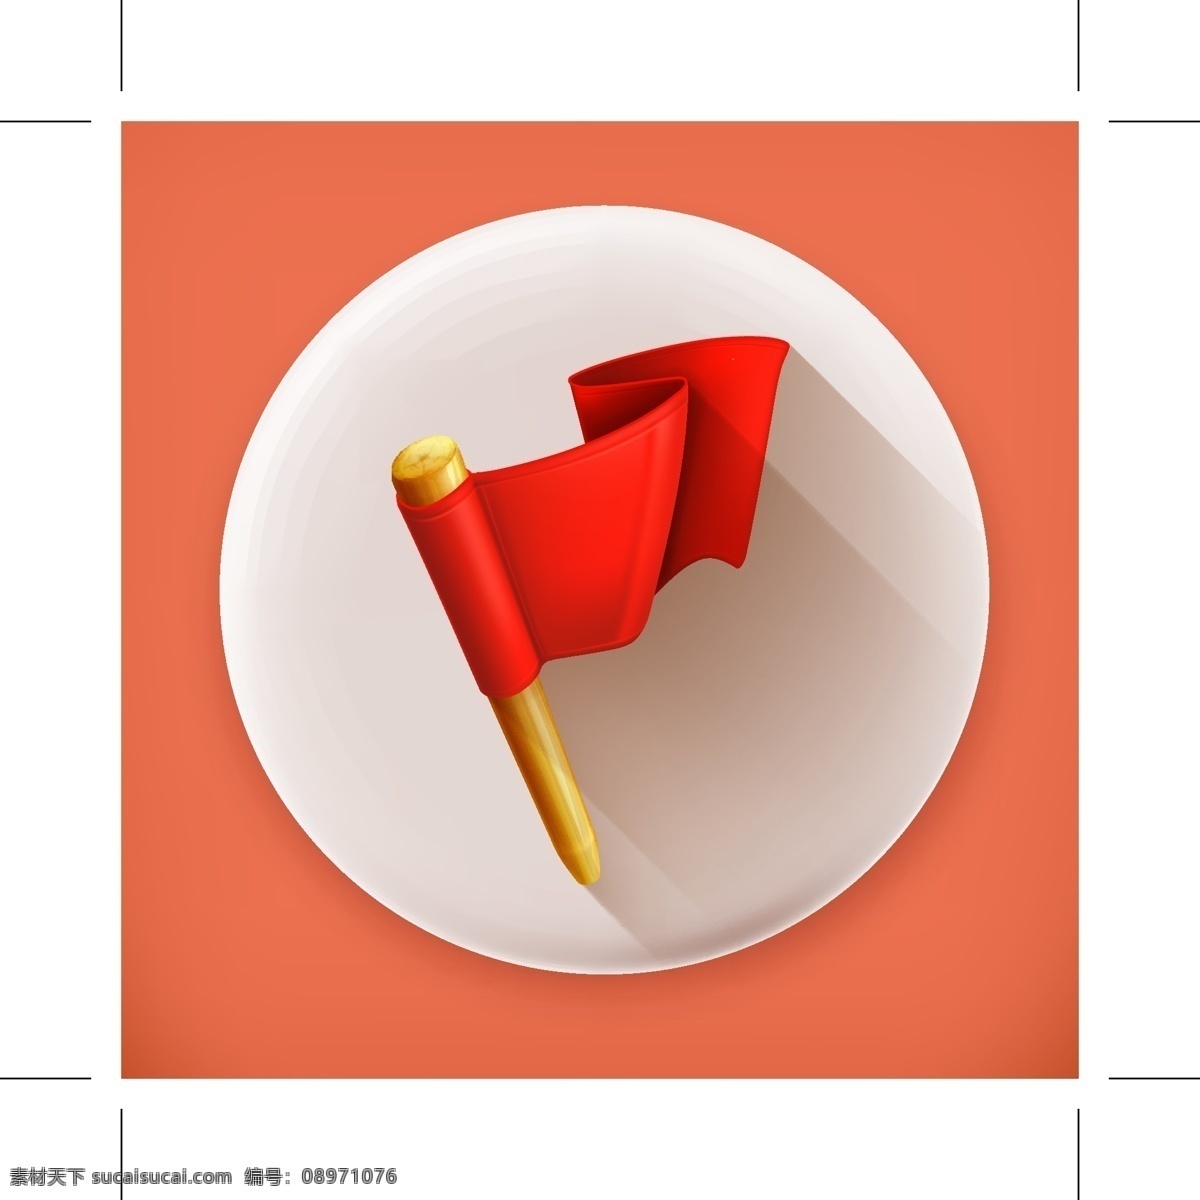 红色旗子图标 红色 旗子 图标 矢量素材 设计素材 背景素材